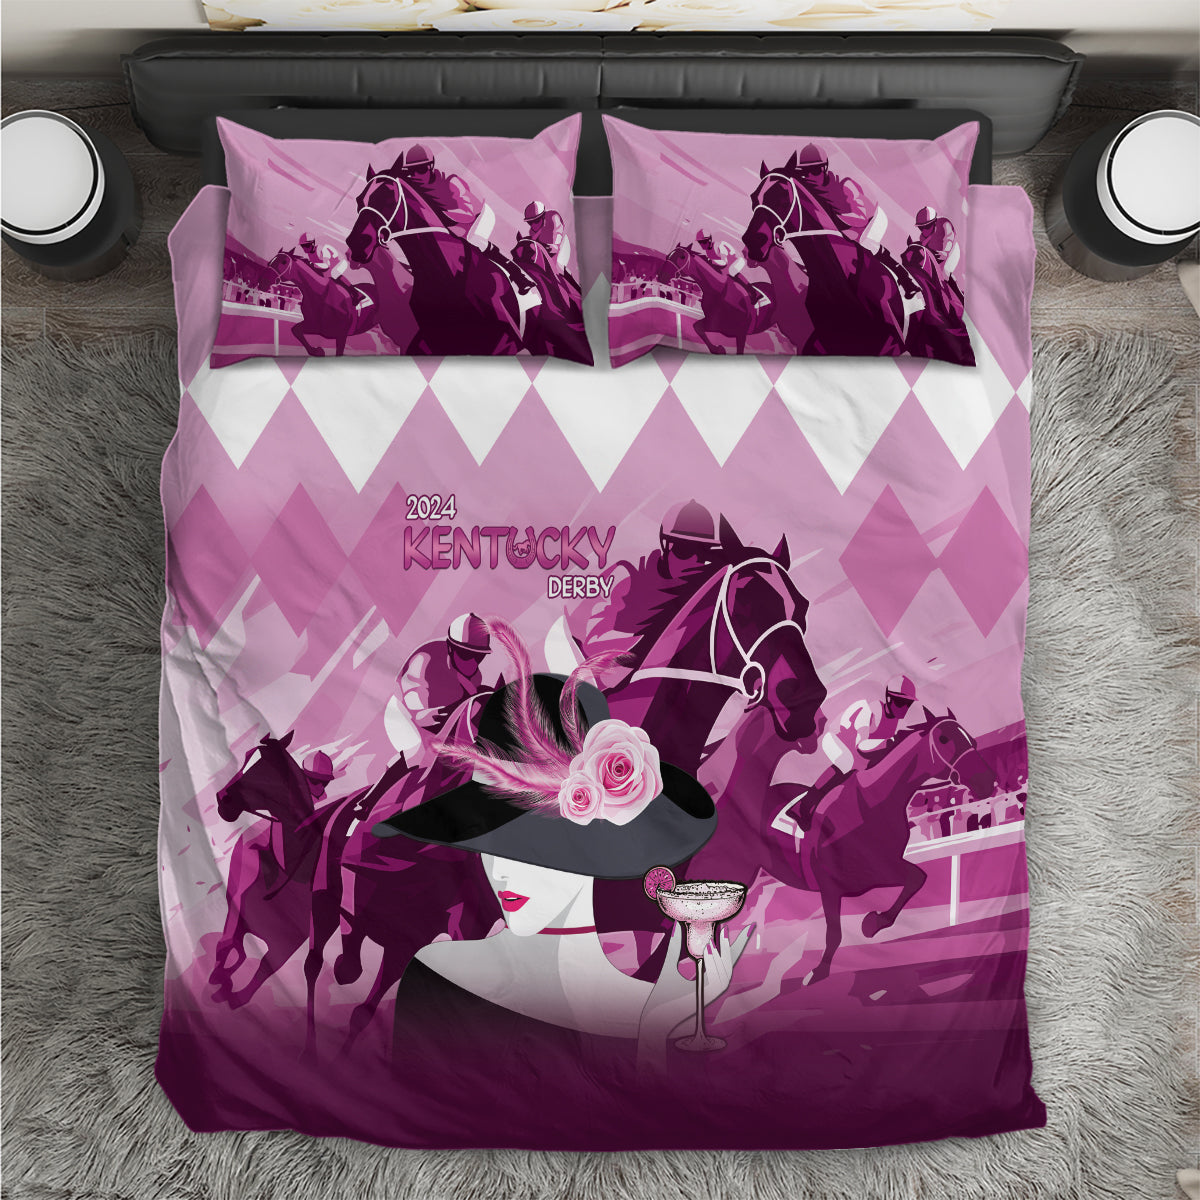 2024 Kentucky Horse Racing Bedding Set Derby Mint Julep Girl - Pink Pastel